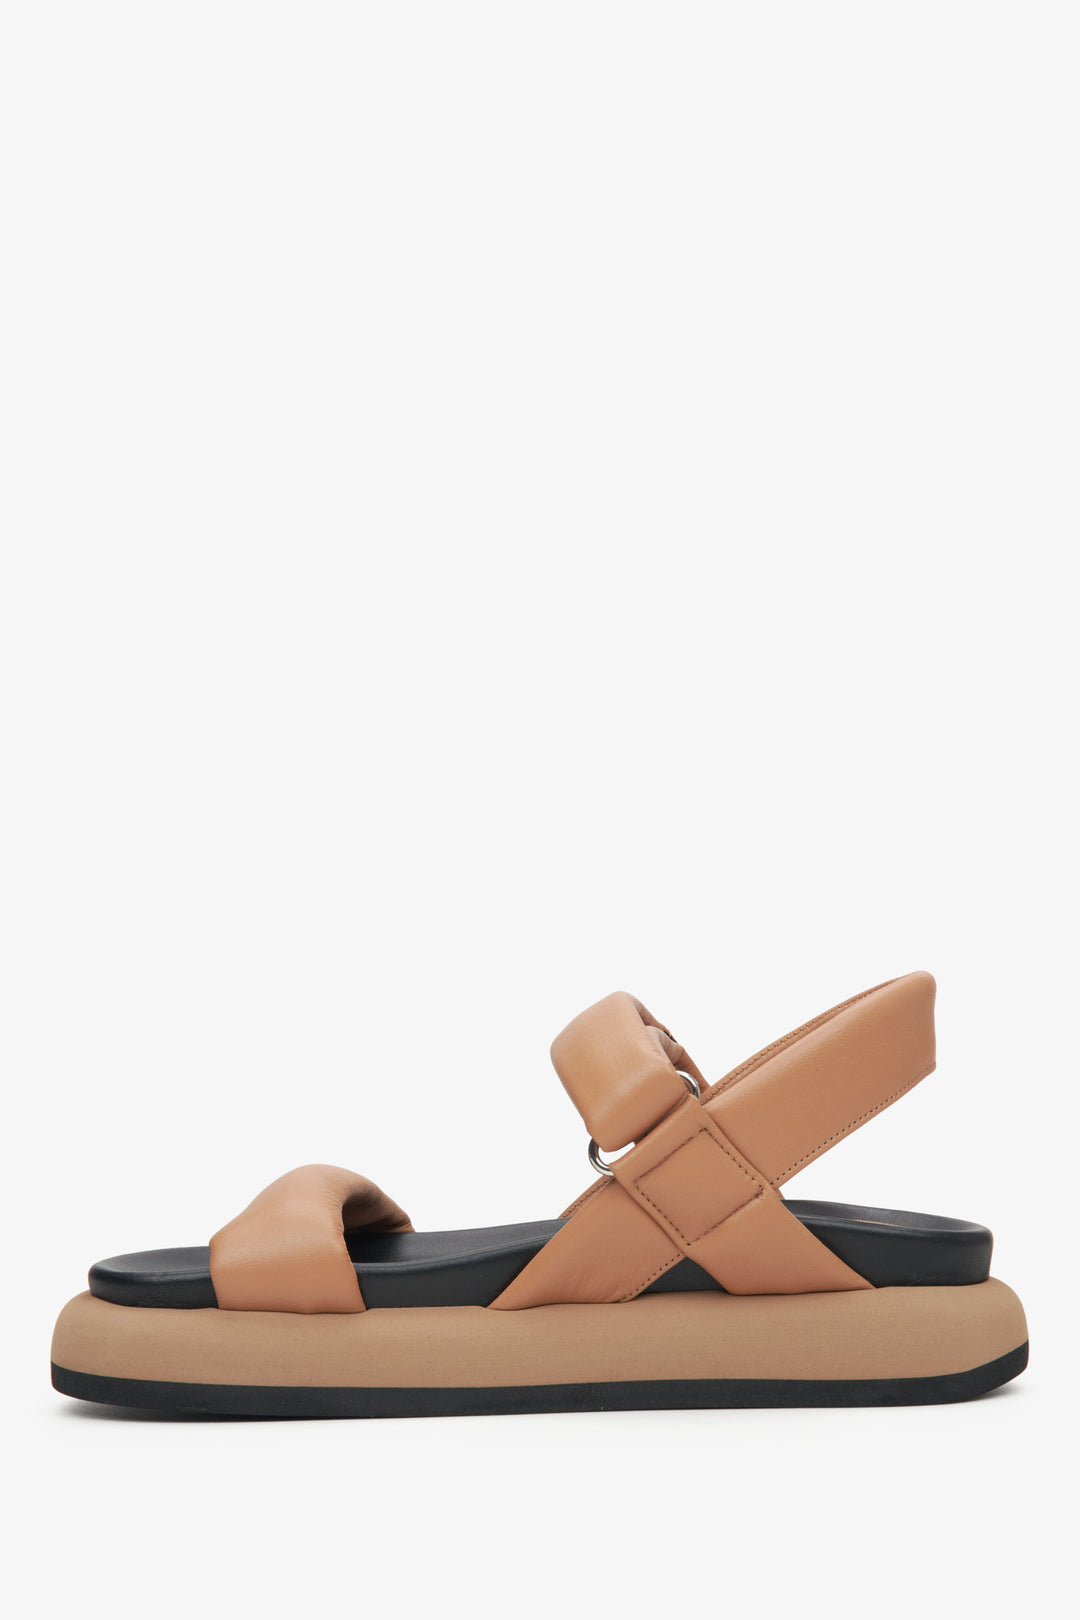 Comfortable women's brown sandals by Estro - shoe profile.